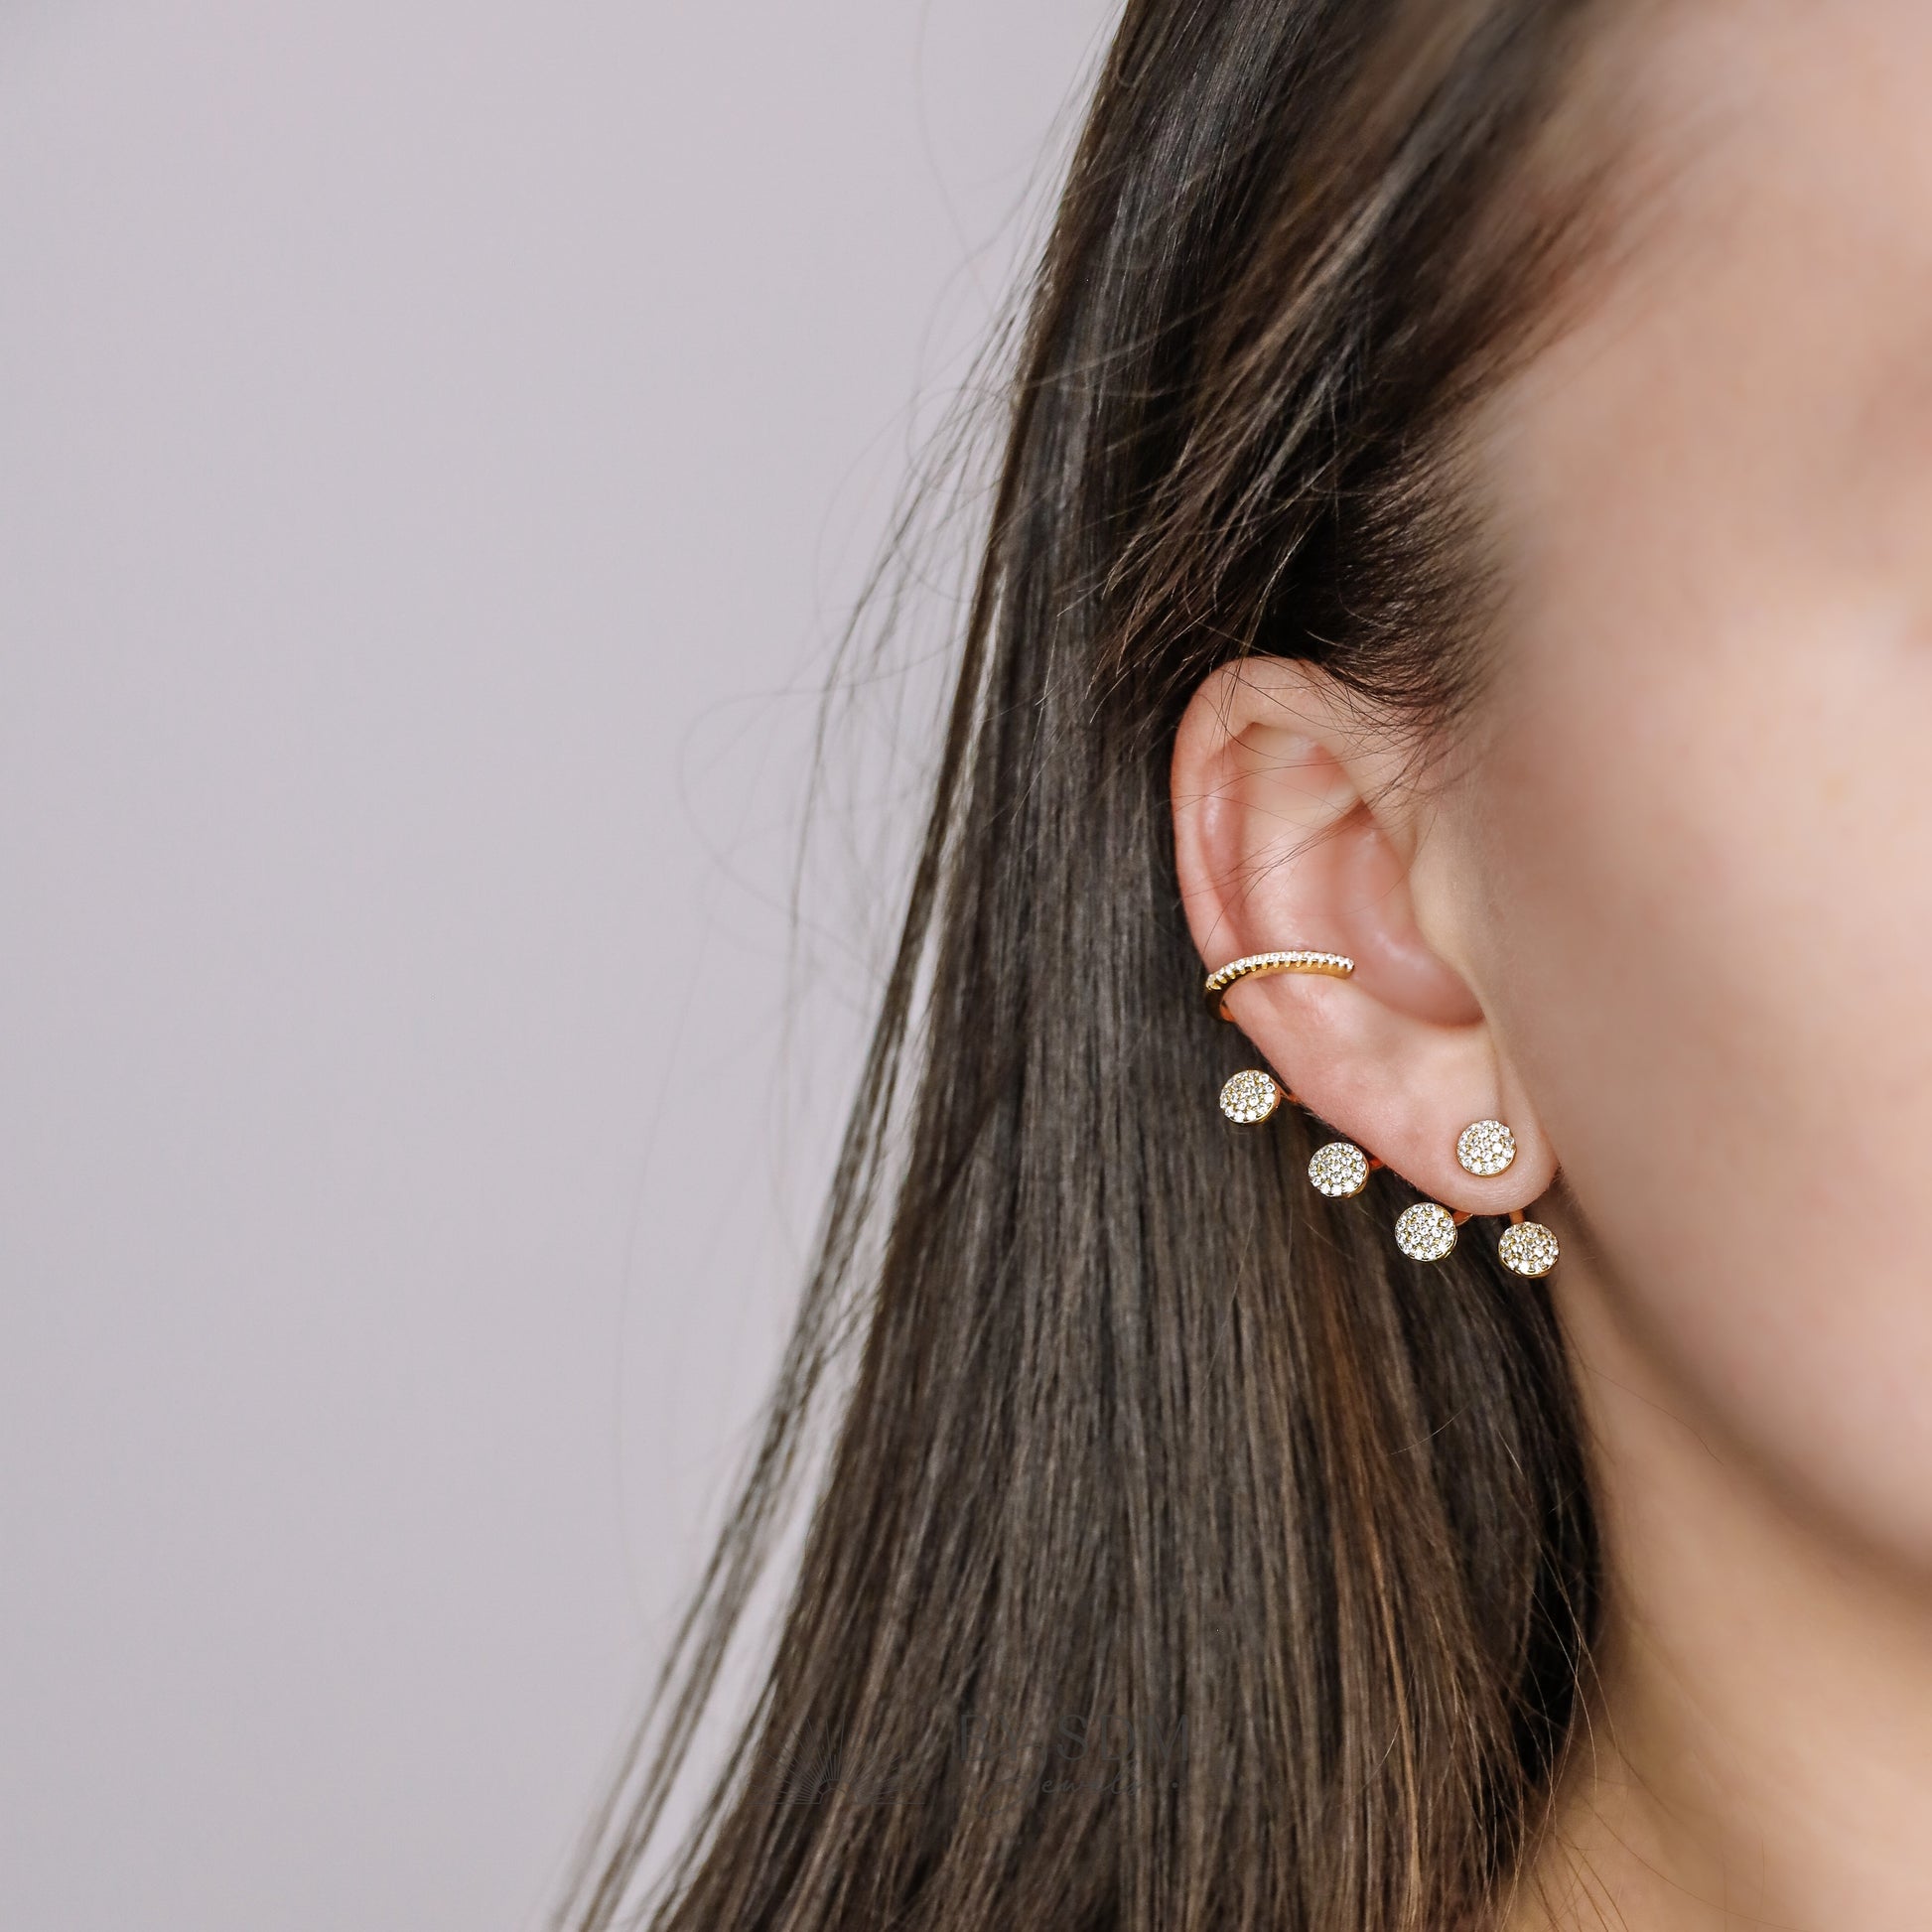 Ear Climbers • Ear Climber • Ear Crawler • Minimalist Earrings • Silver Jewelry • Gold Earrings • Ear Jacket • Ear Cuff